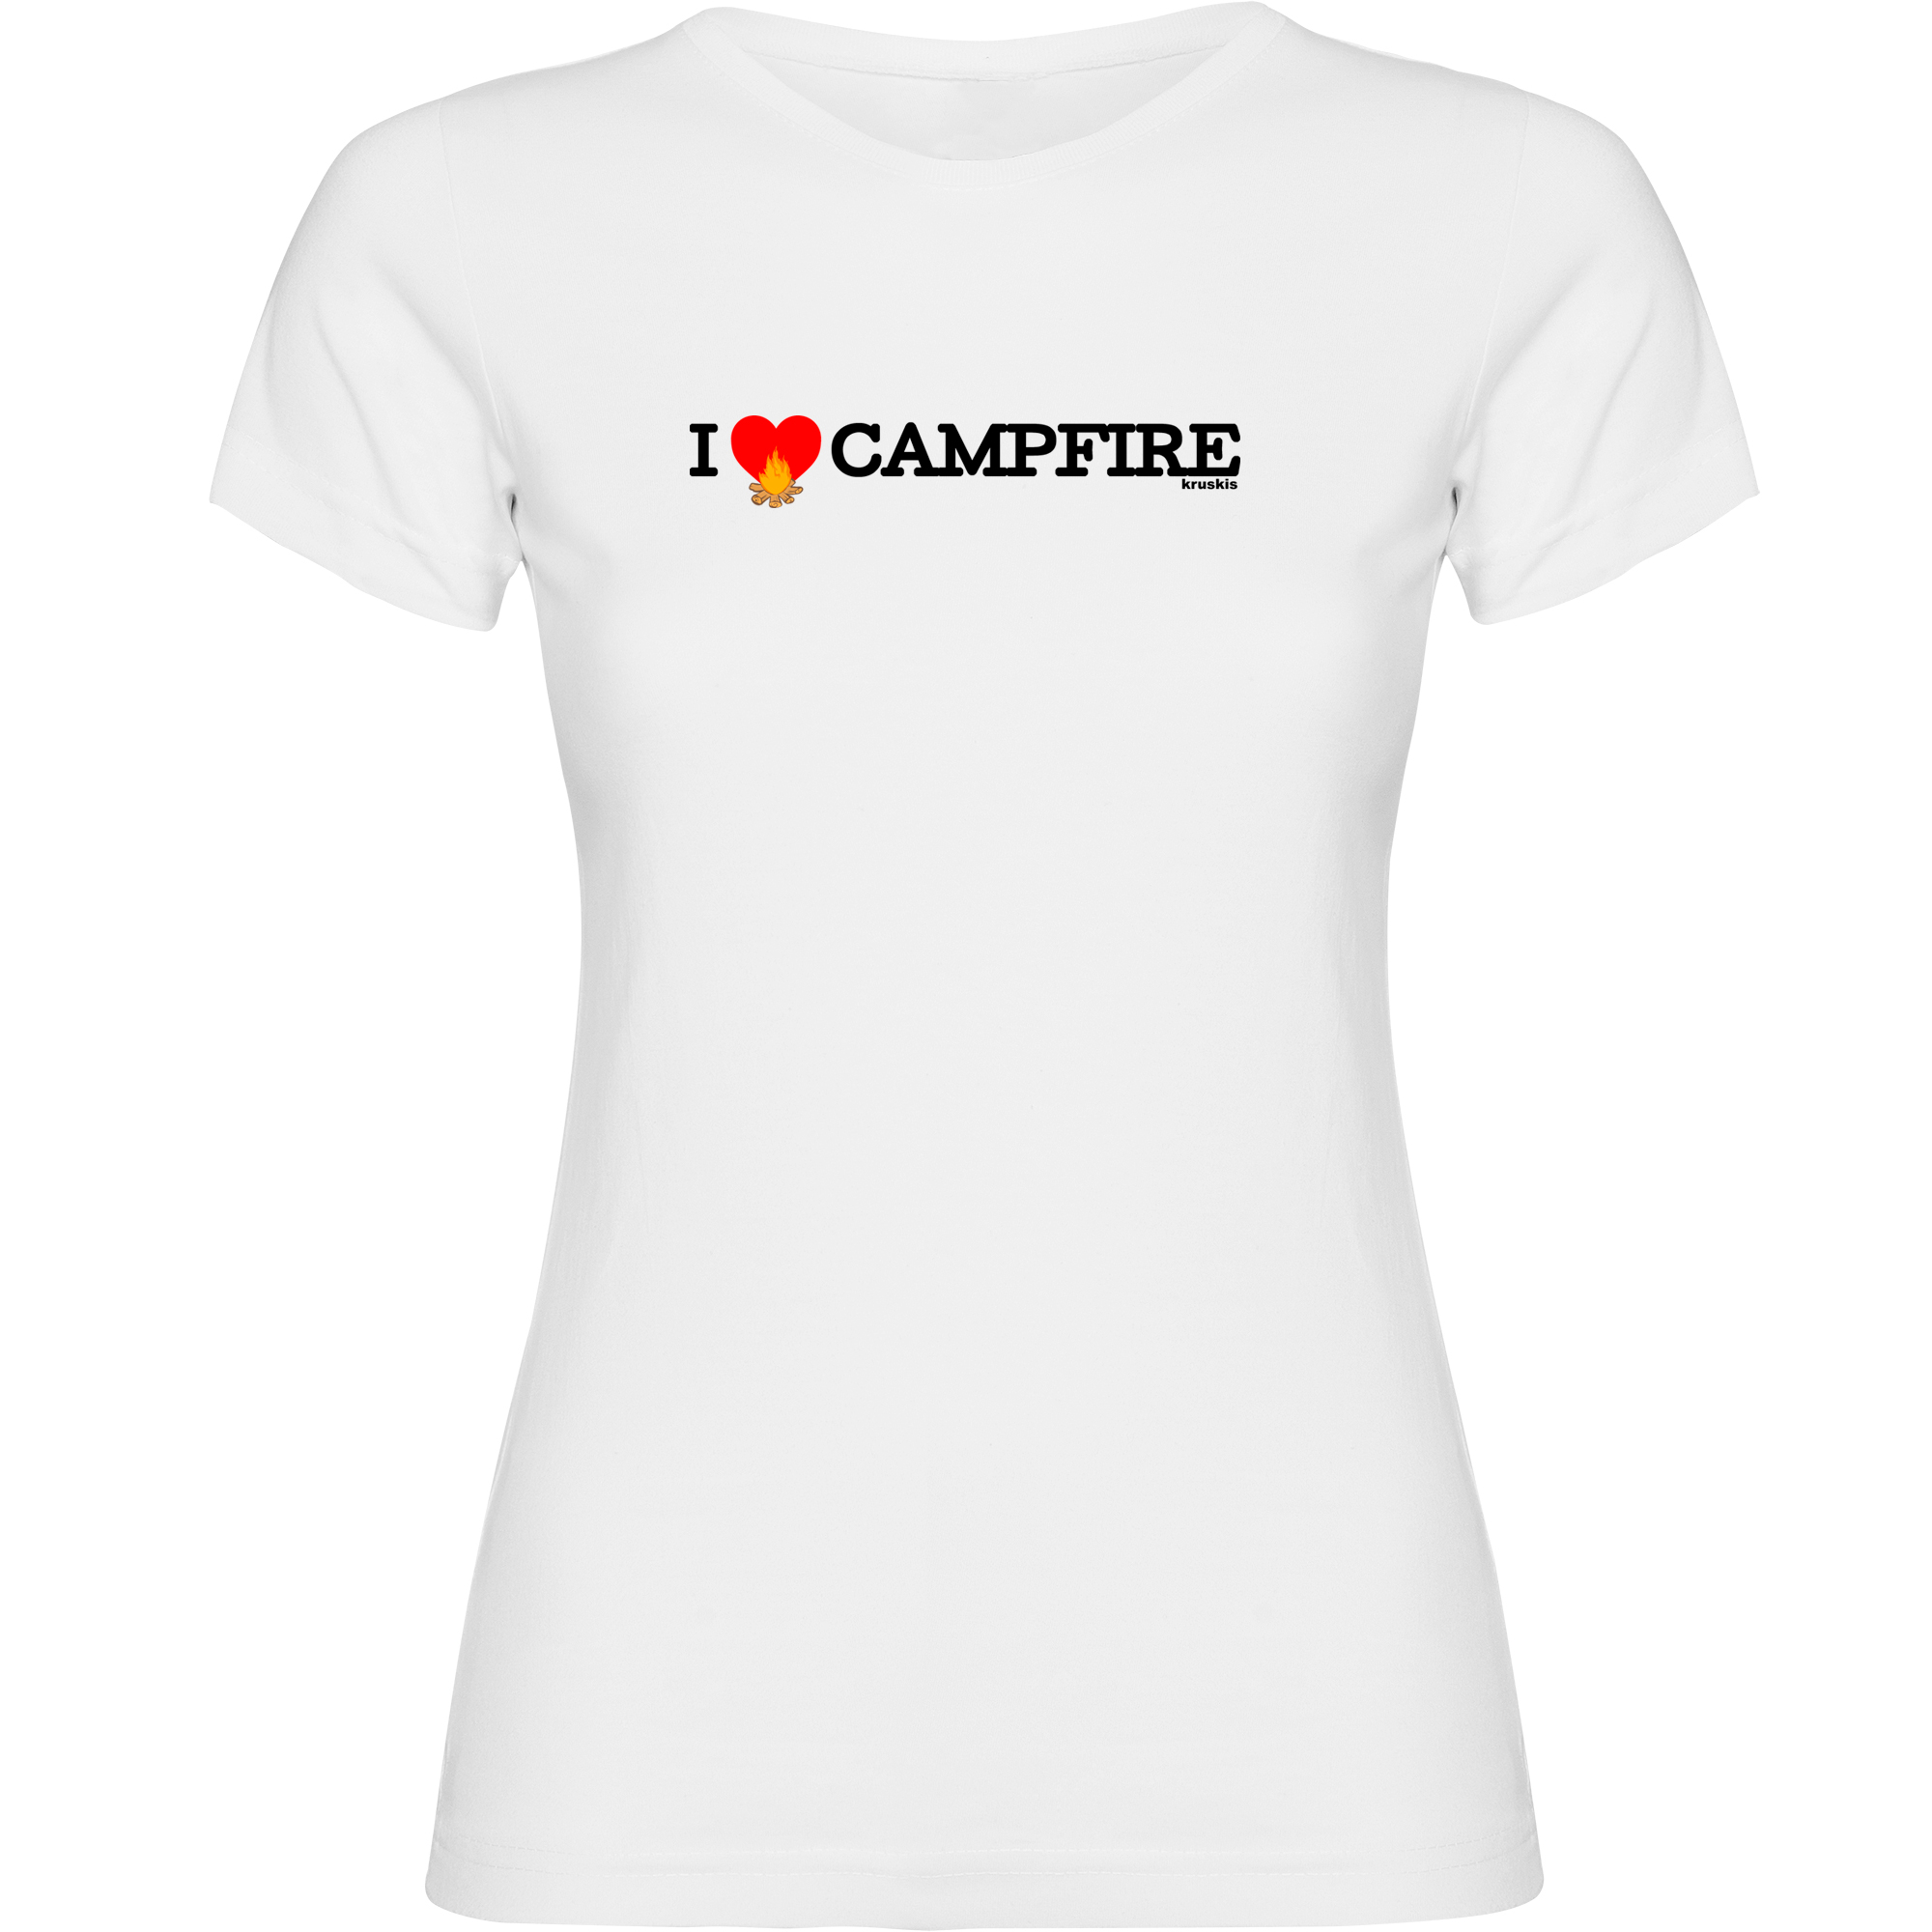 T shirt Trekking I Love Campfire Short Sleeves Woman